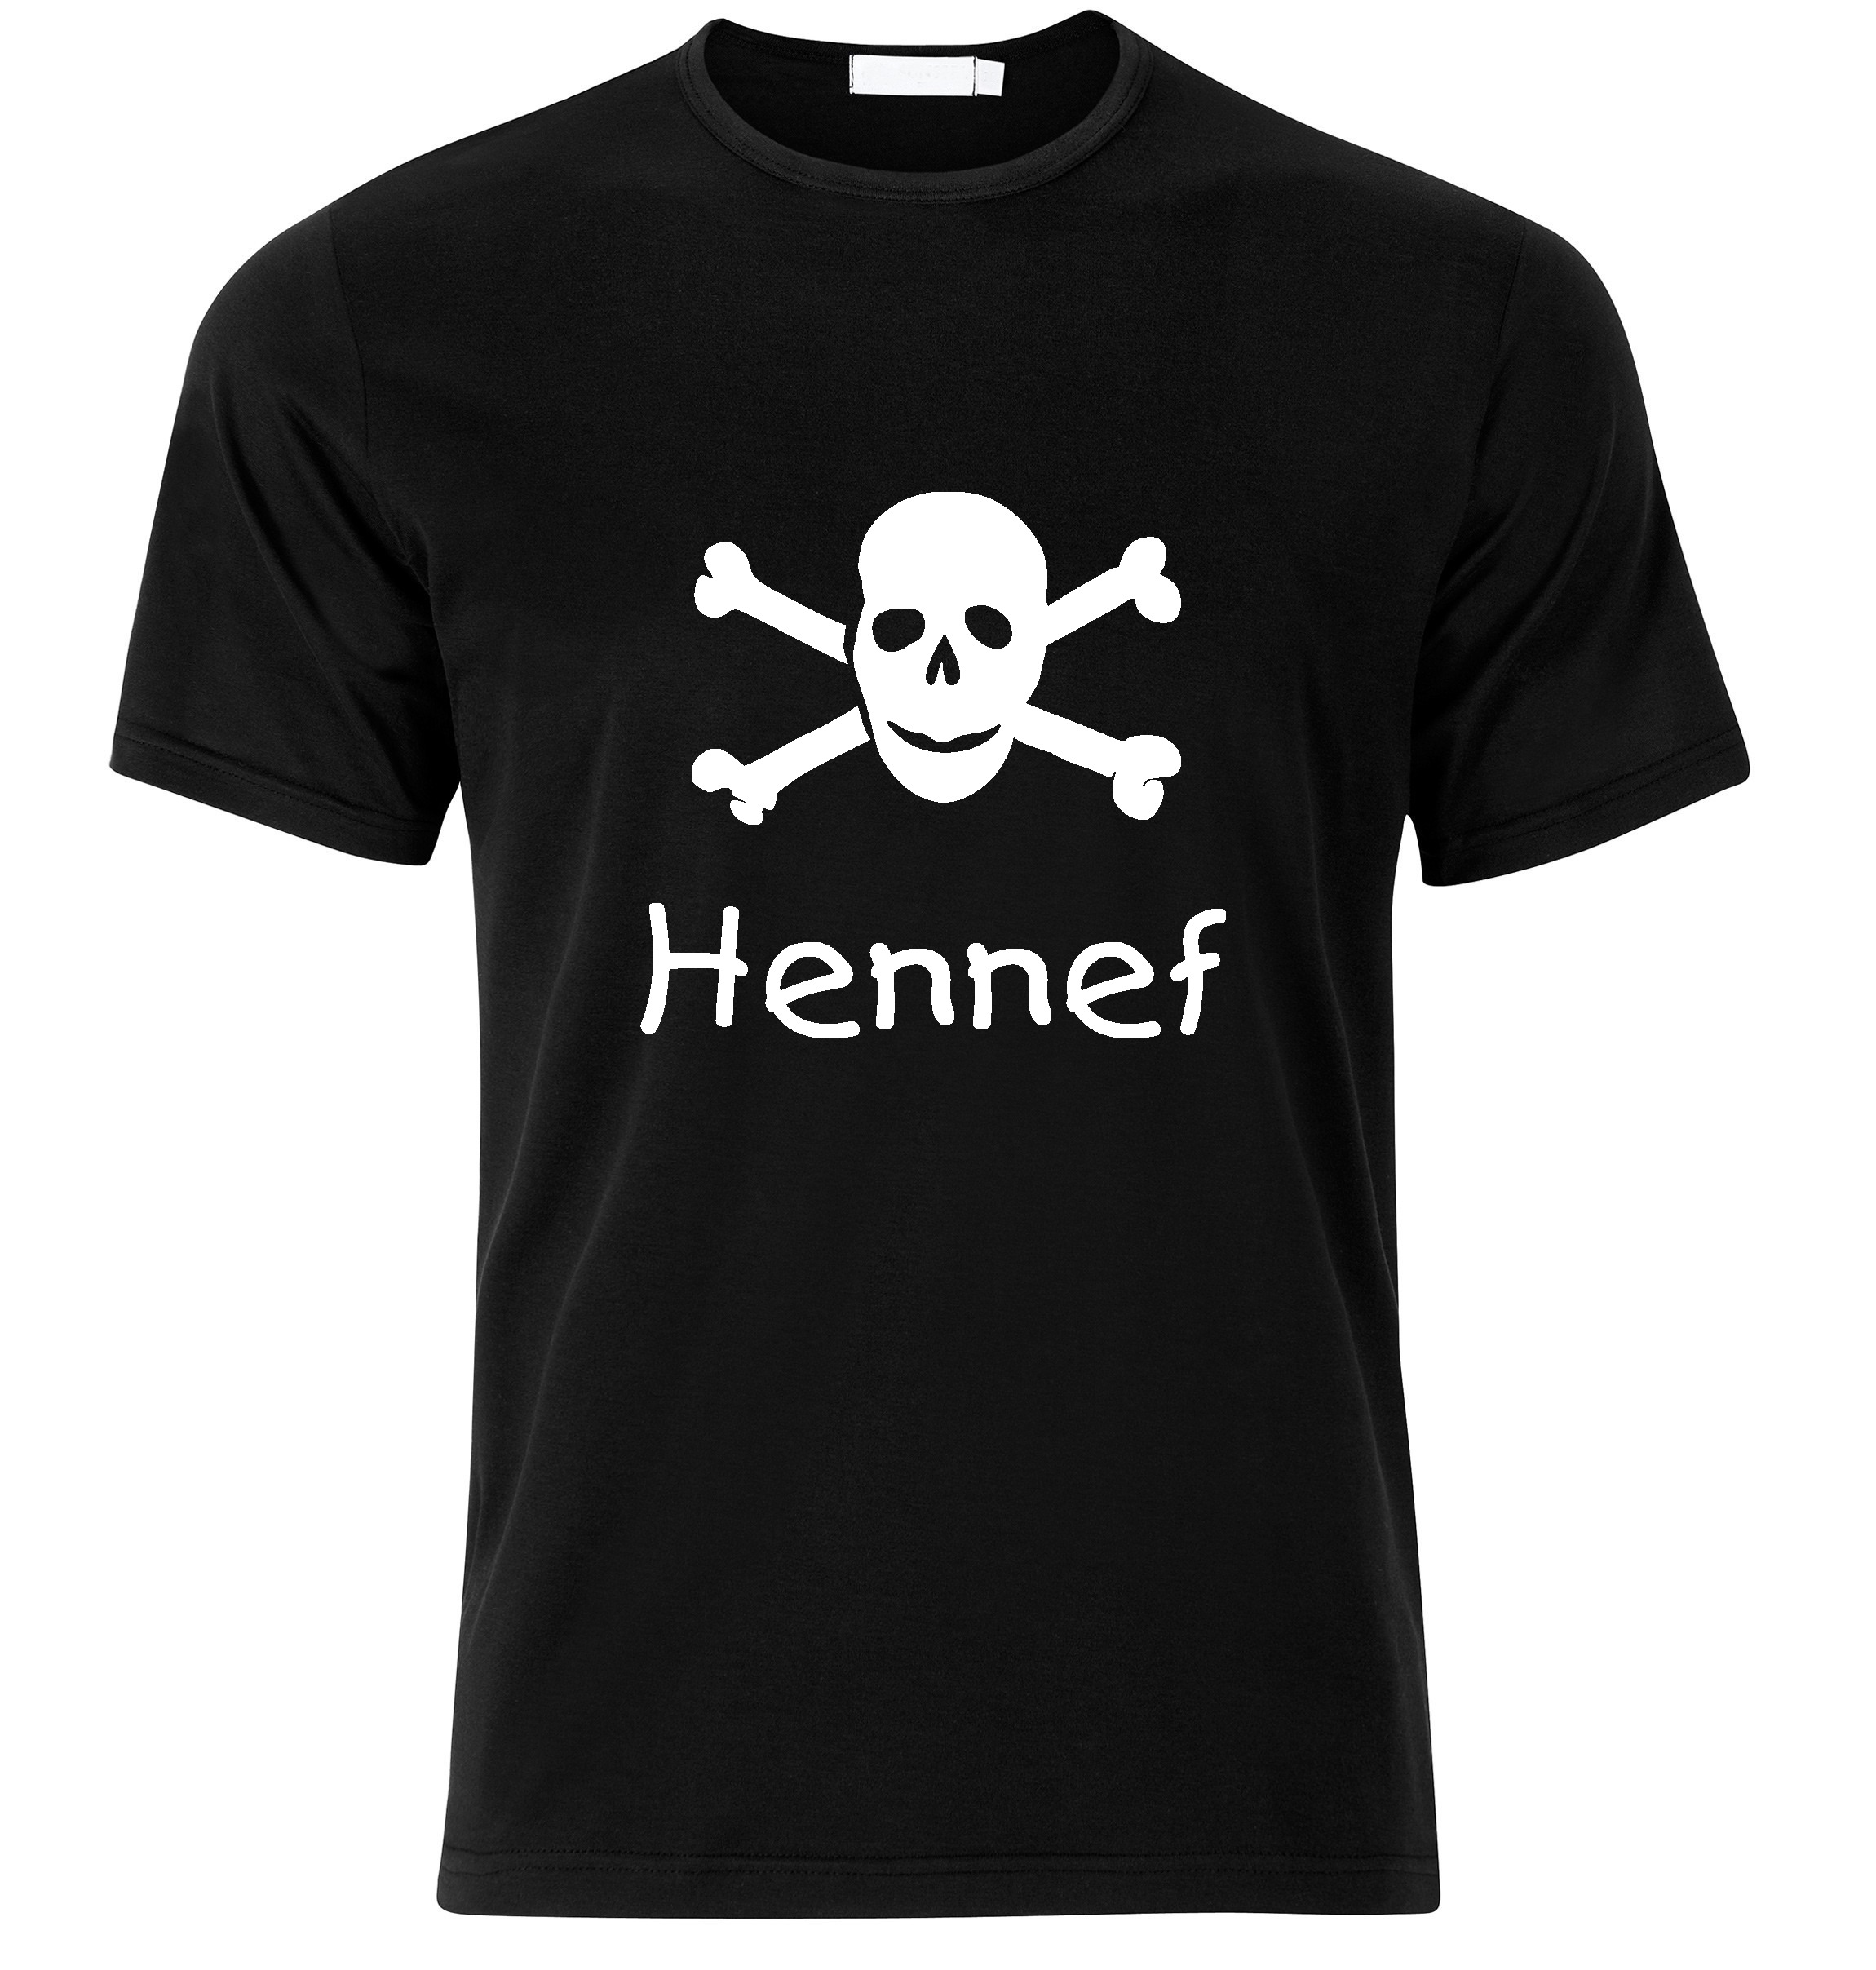 T-Shirt Hennef Jolly Roger, Totenkopf